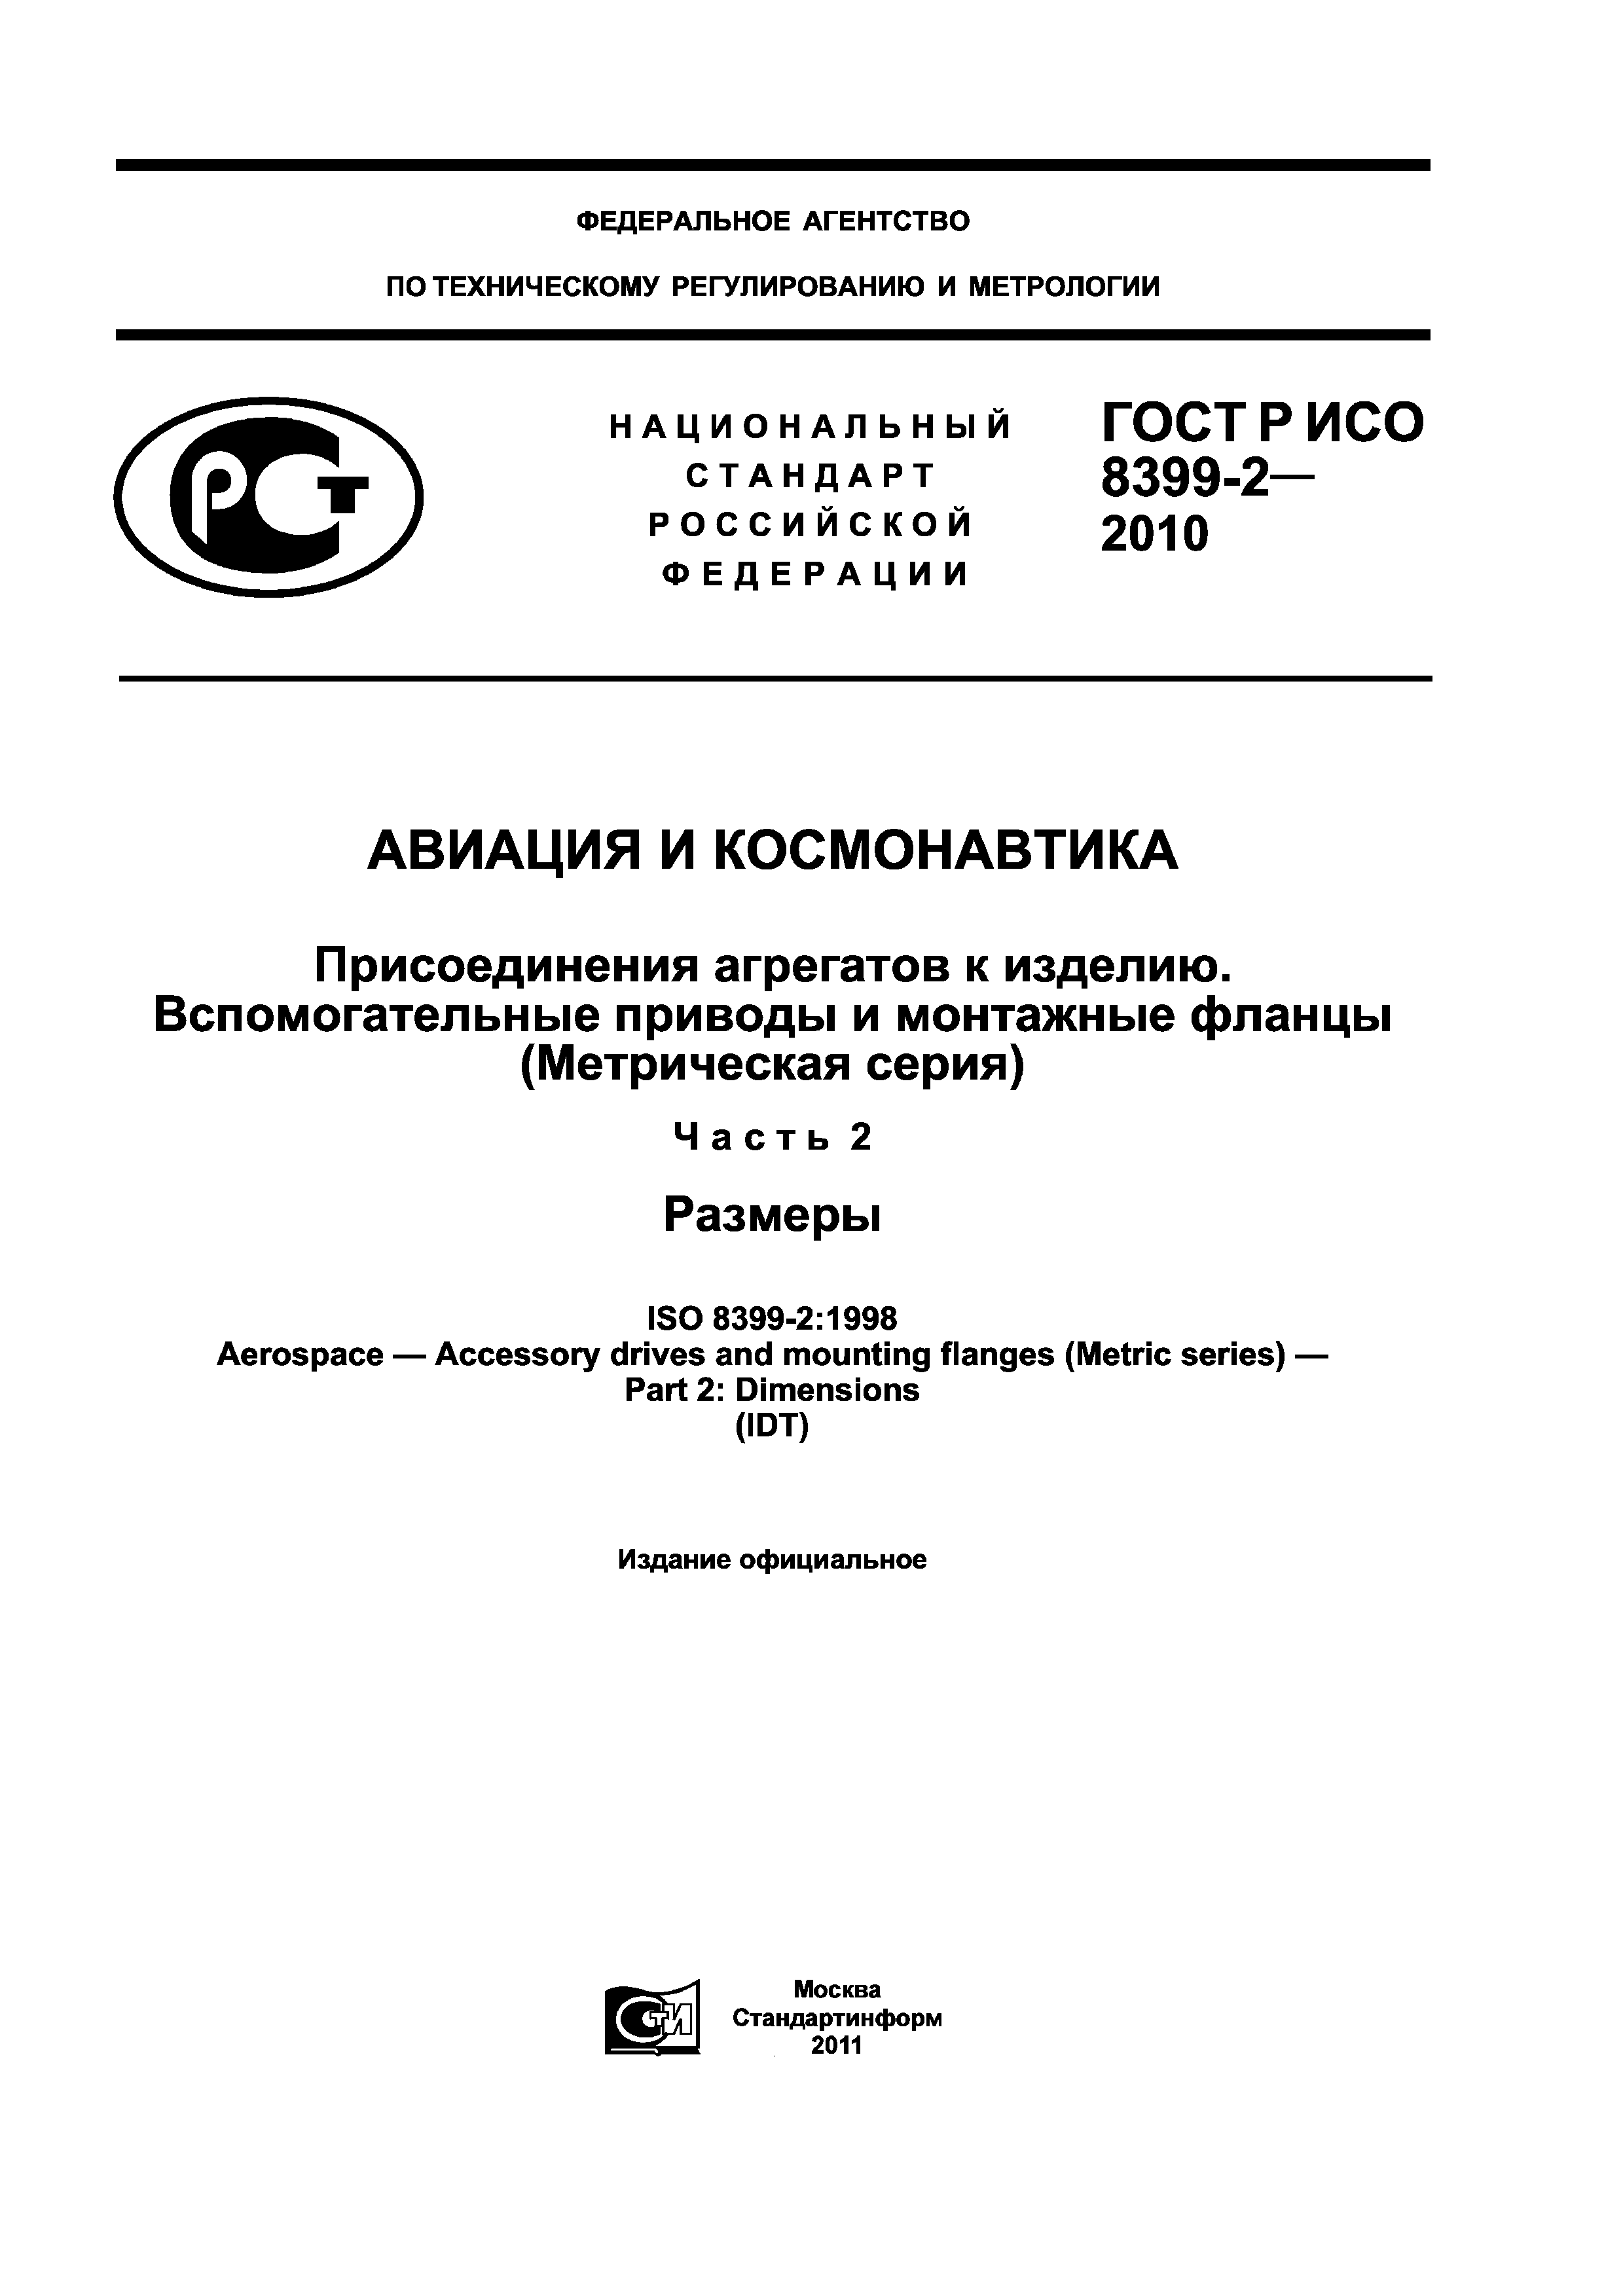 ГОСТ Р ИСО 8399-2-2010